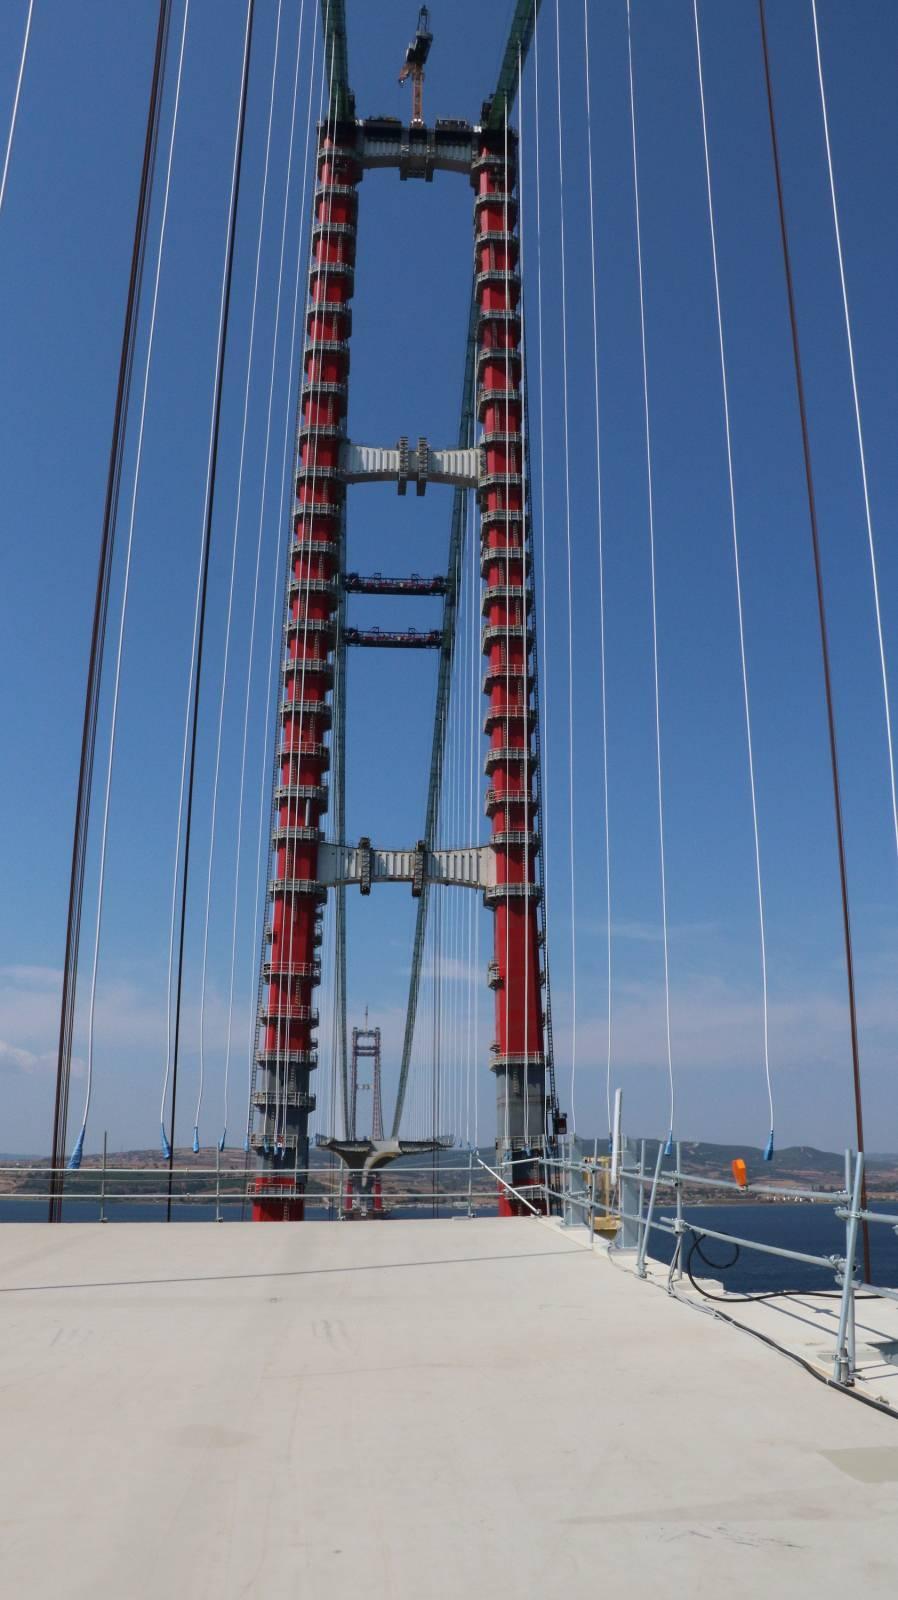 <p>Ulaştırma ve Altyapı Bakanı Adil Karaismailoğlu, çalışmaları incelemek üzere yaptığı son ziyarette, köprünün hizmete açılmasıyla Çanakkale Boğazı'nın 6 dakika gibi kısa sürede geçilebileceğini söylemişti.</p>

<p> </p>
